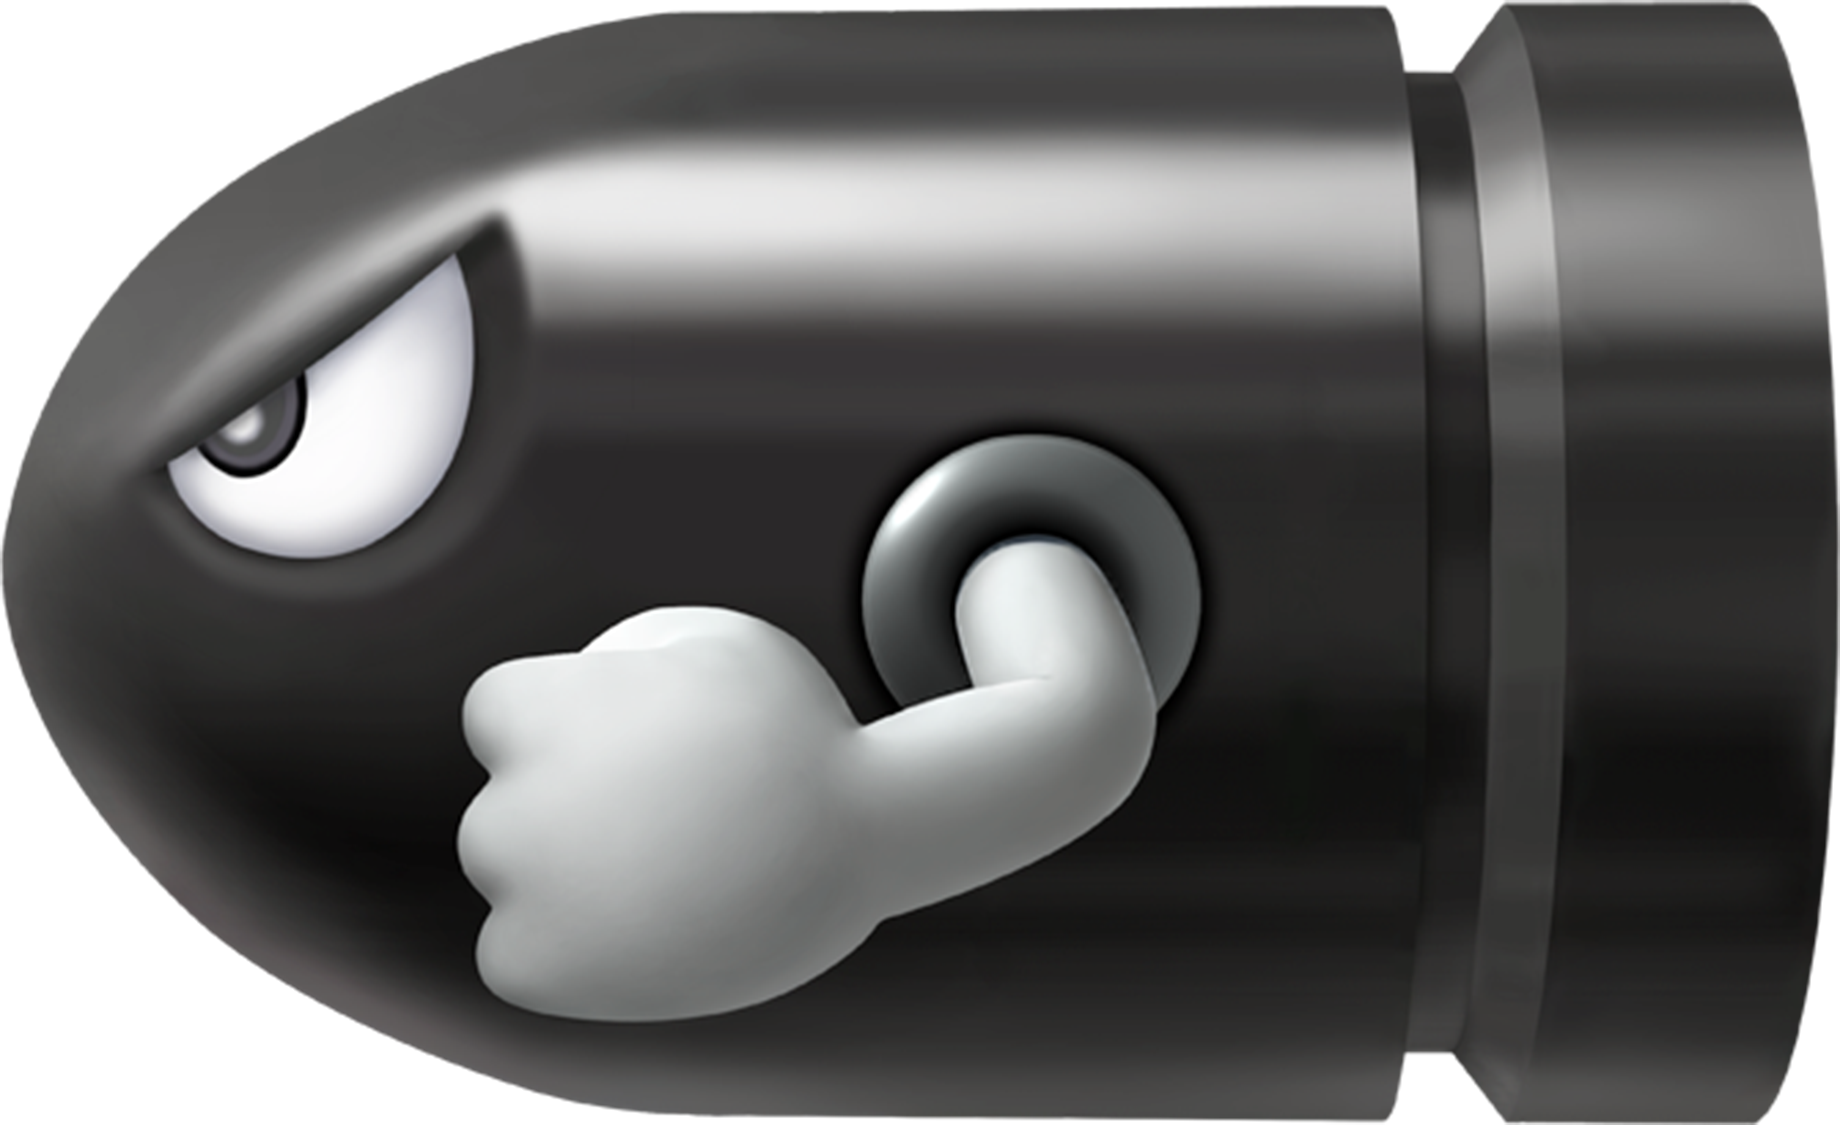 Bullet Bill - Mario Kart Wii.png